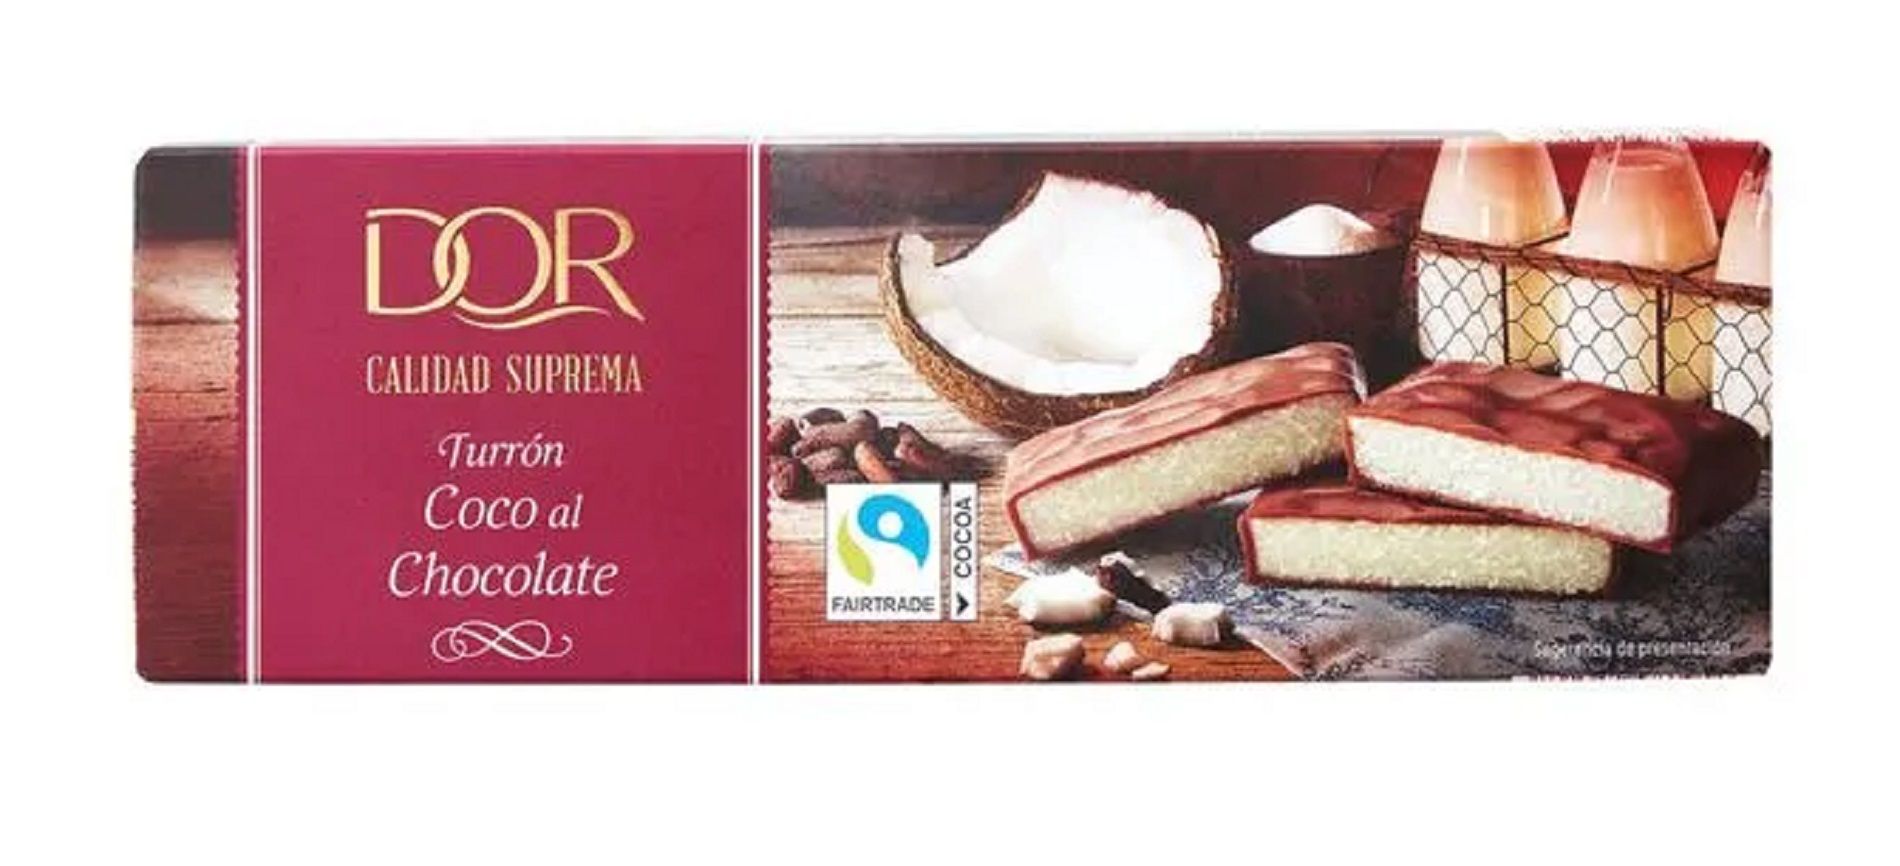 Turrón de chocolate con coco y caramelo / Lidl